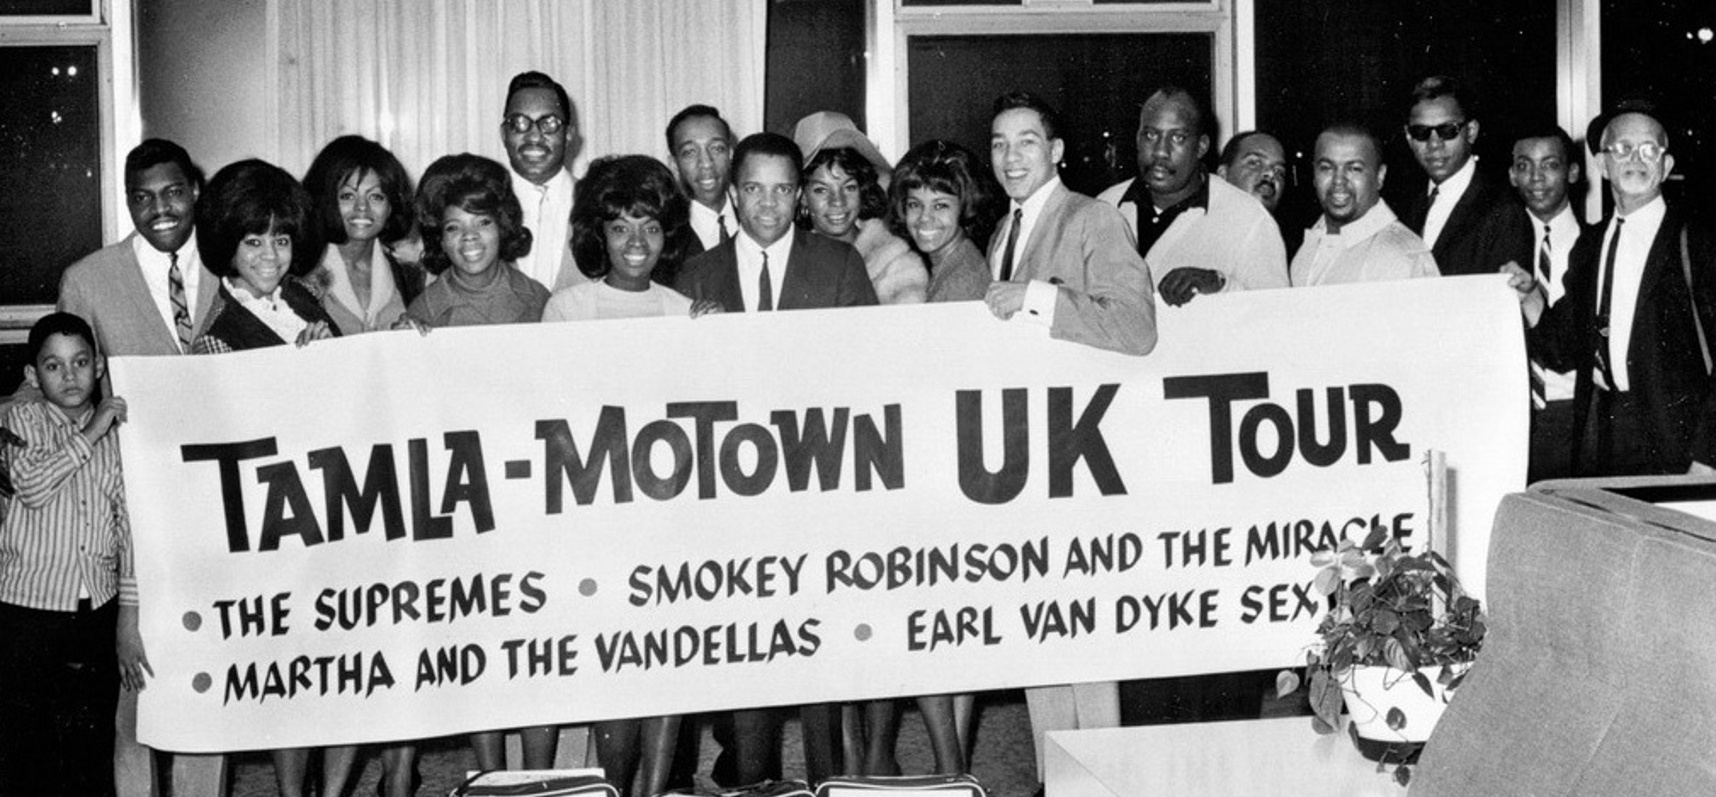 Tamla-Motown Motor Town Revue